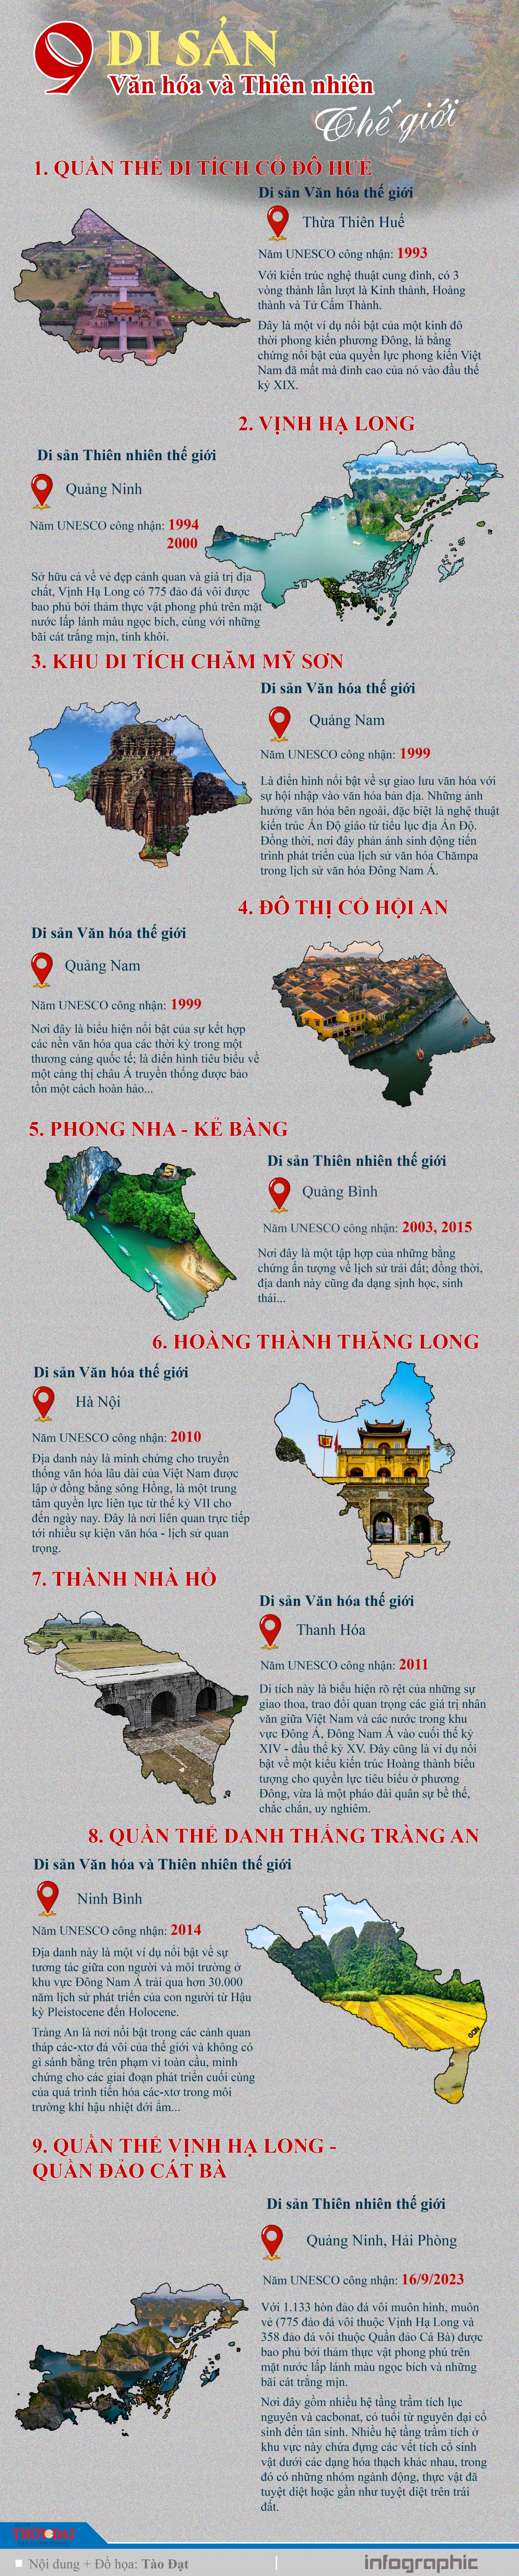 Infographic: 9 Di sản văn hóa và thiên nhiên thế giới được công nhận của Việt Nam